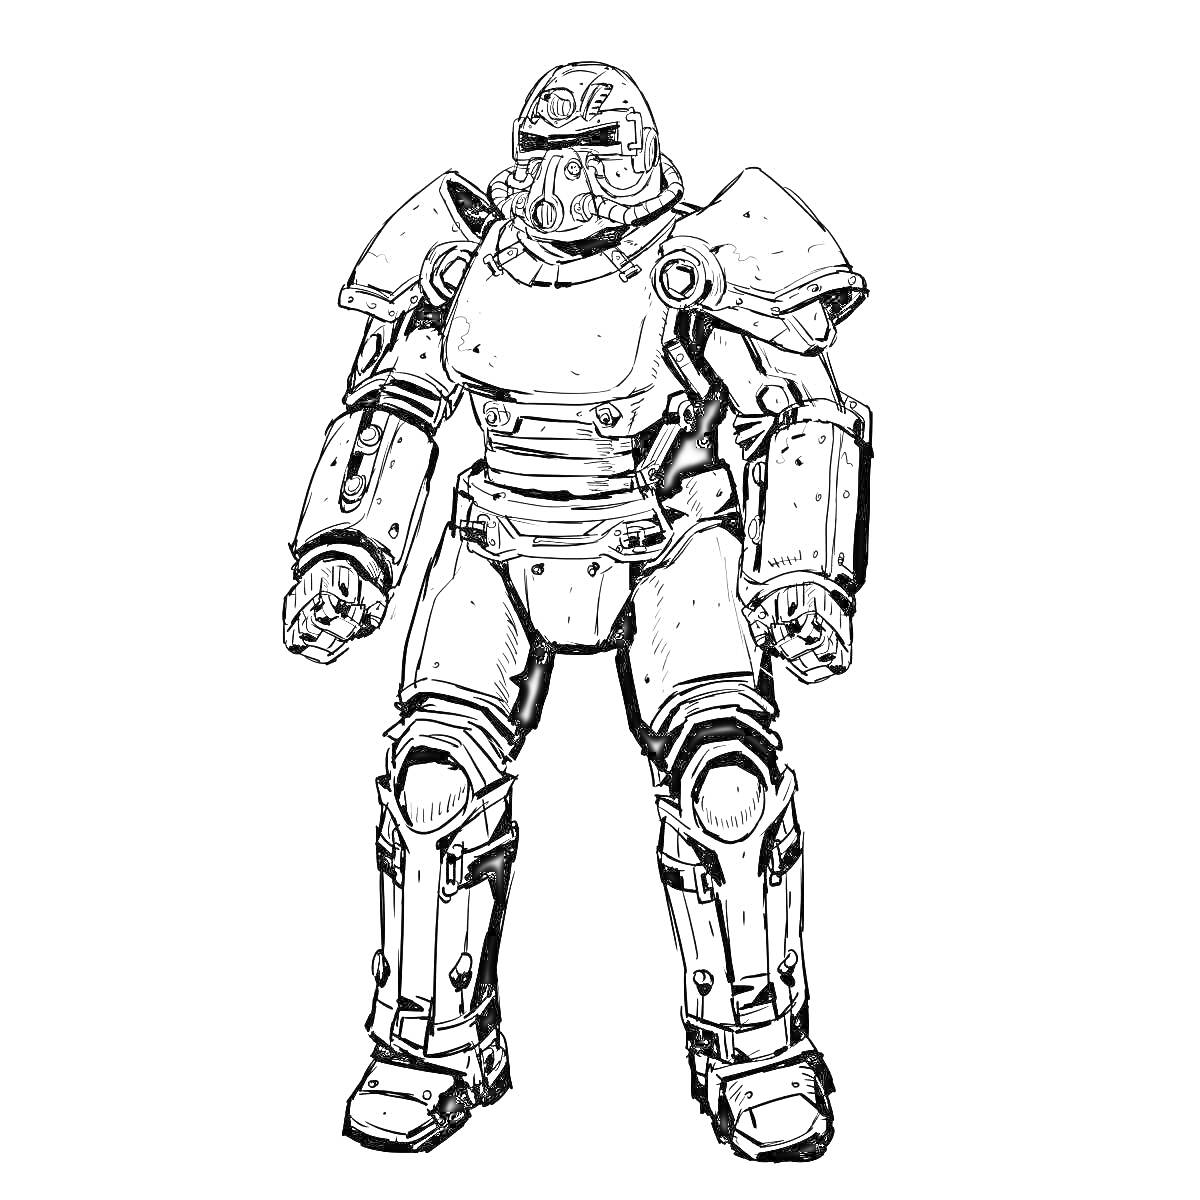 Раскраска Рисунок силовой брони из Fallout 4 с шлемом и броней на плечах, груди, руках и ногах